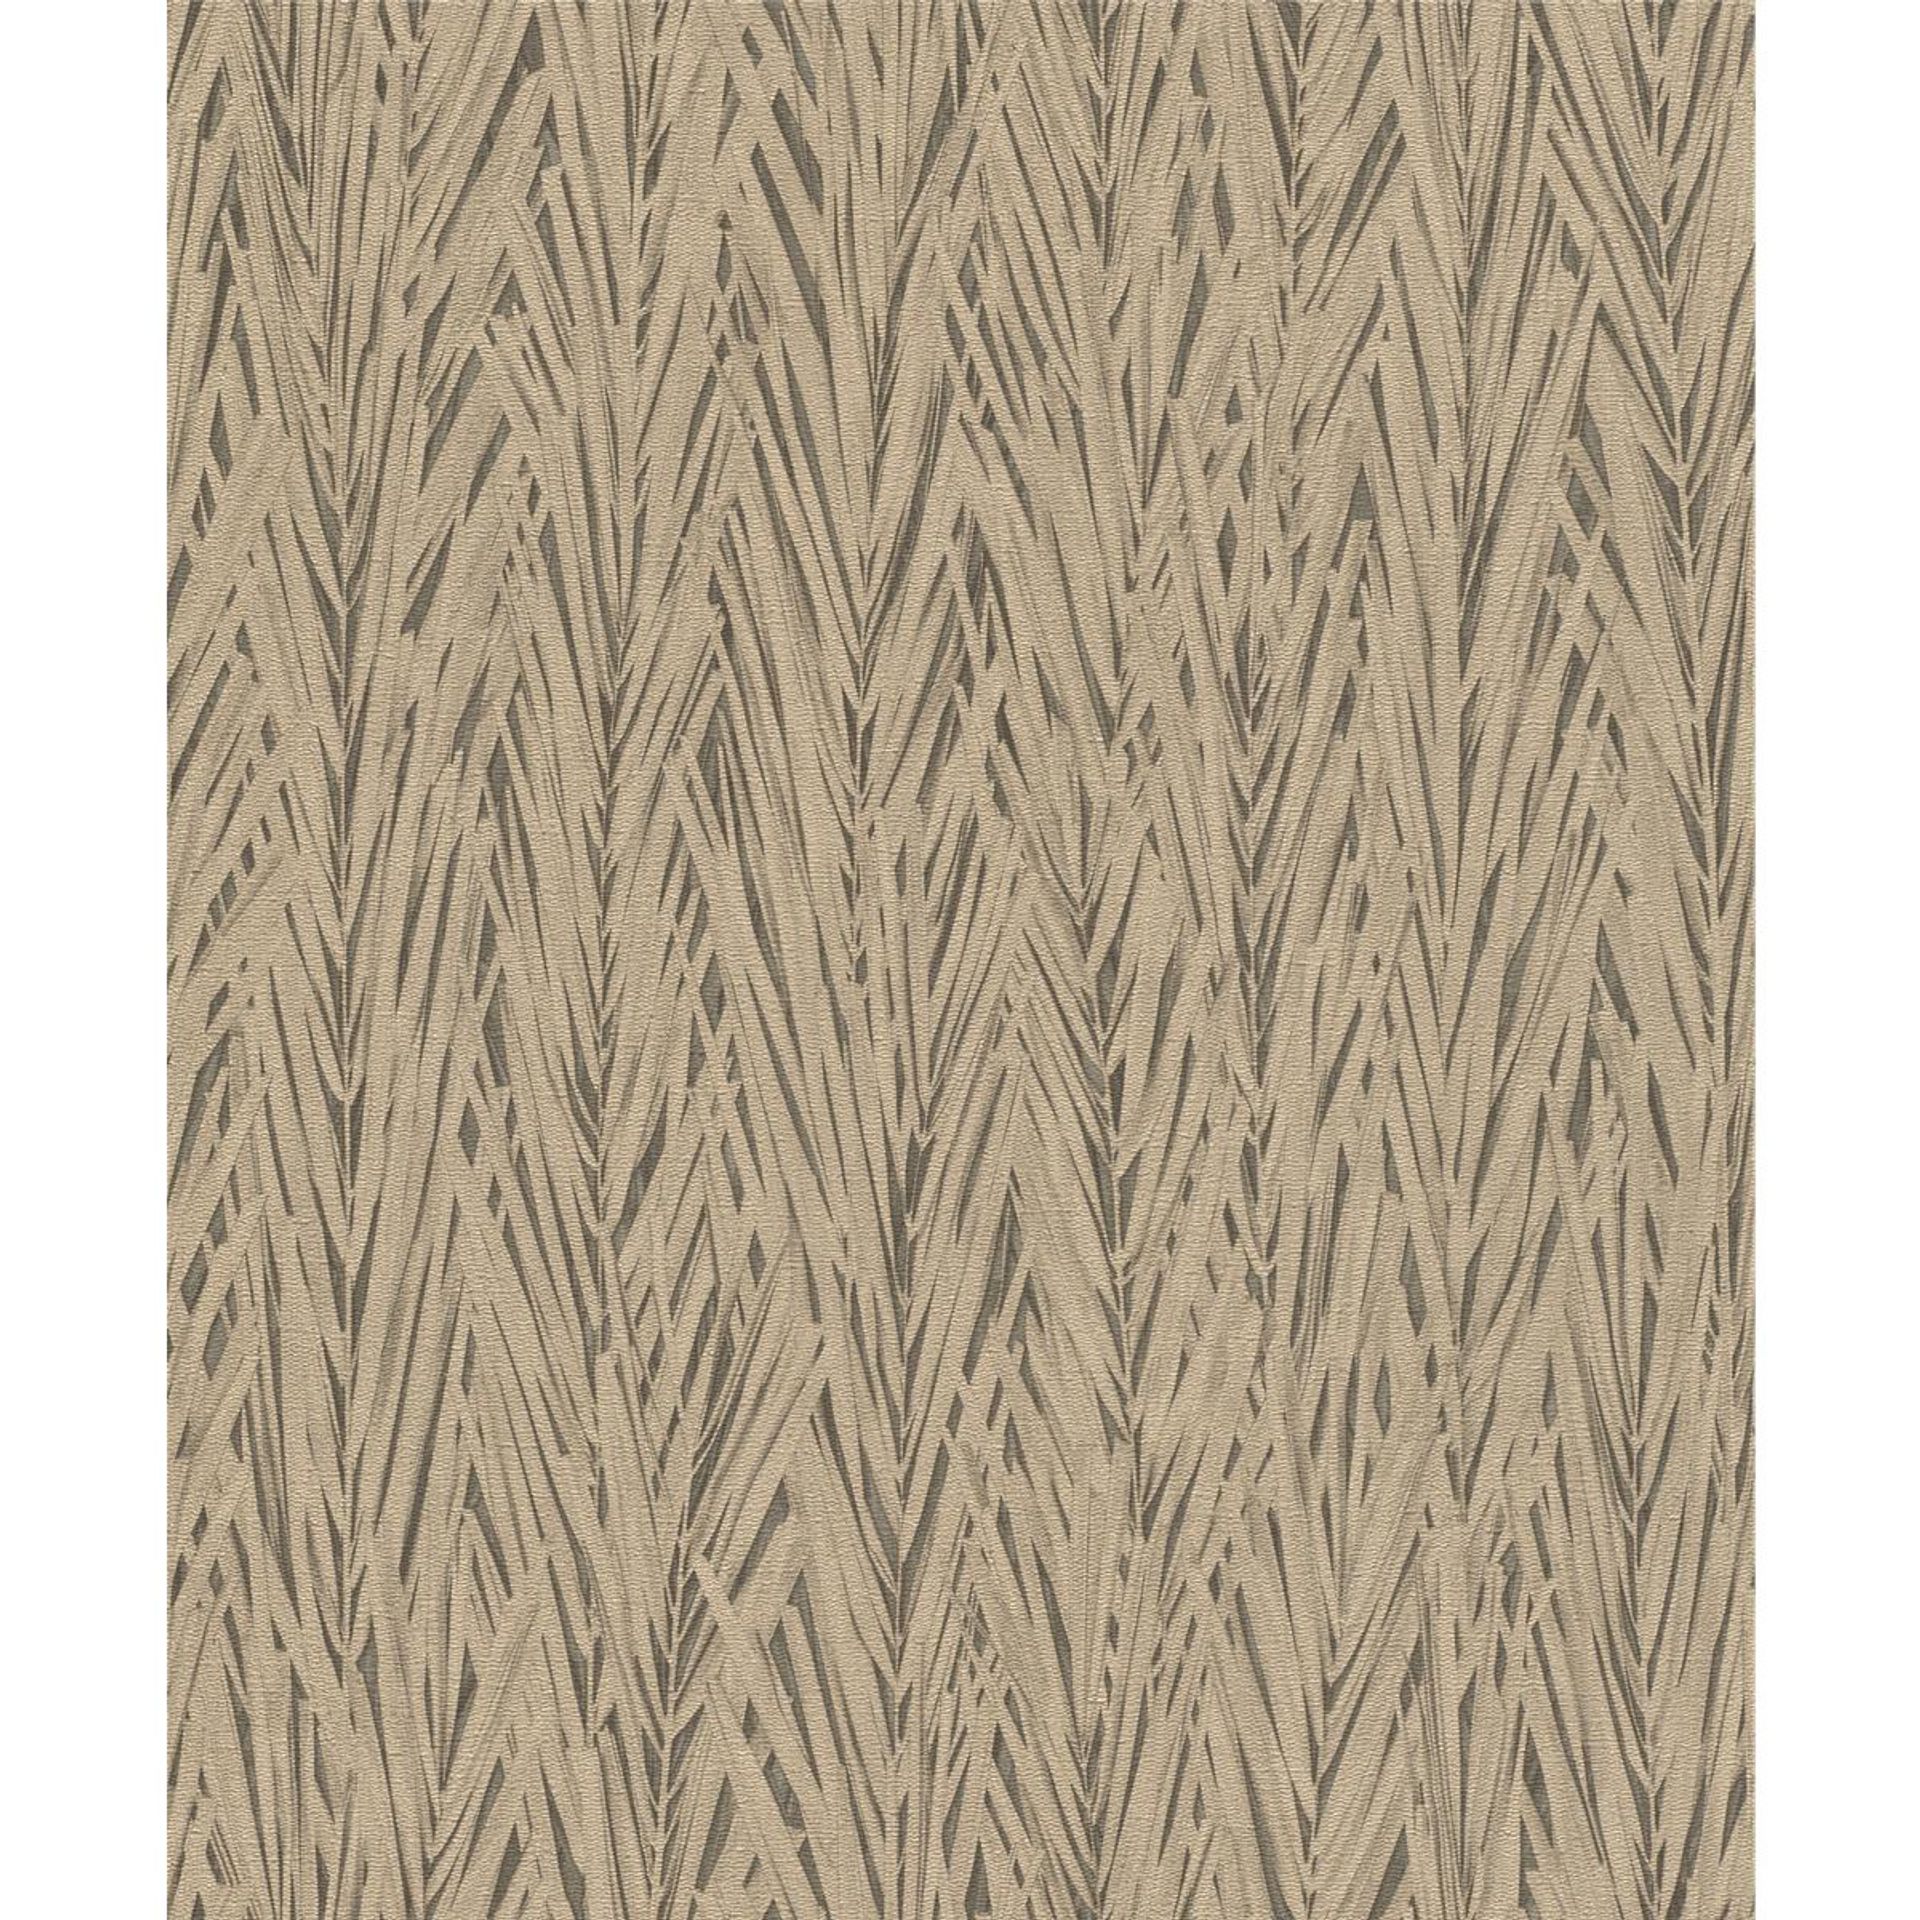 Tapete Modern floral Vinyltapete Mattgold versetzter Ansatz 53 cm x 10,05 m